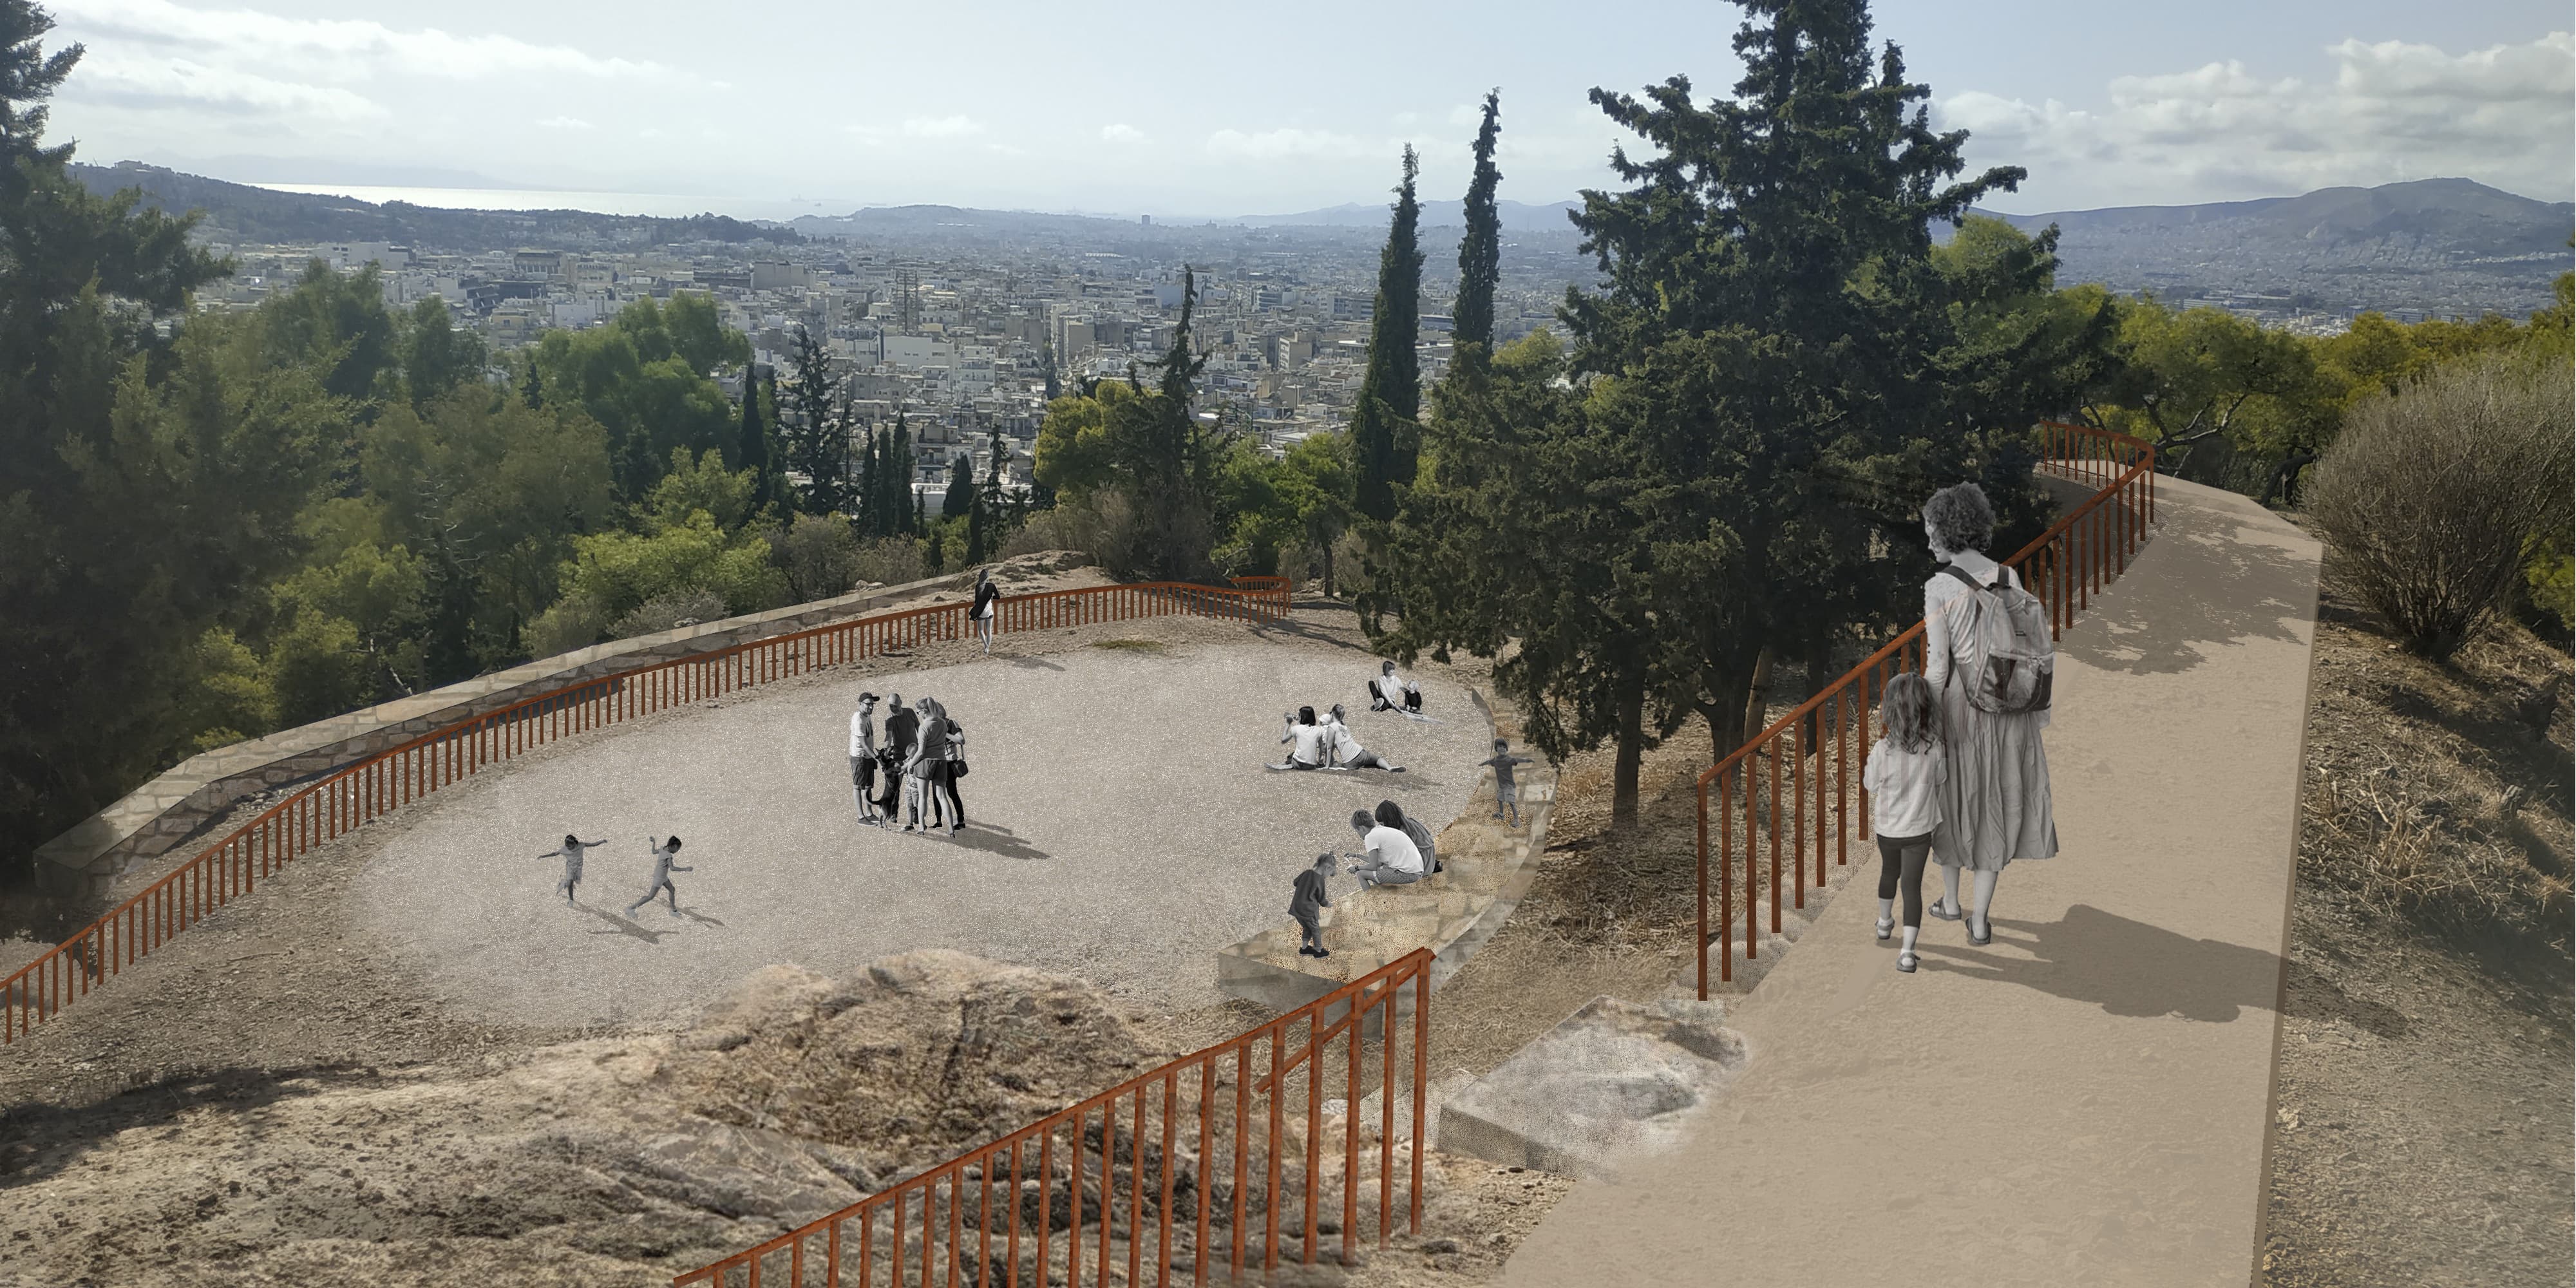 Υιοθέτησε την πόλη σου»: Αλλάζει όψη ο λόφος του Στρέφη -Οσα ετοιμάζει ο δήμος Αθηναίων στην περιοχή [εικόνες] | ΕΛΛΑΔΑ | iefimerida.gr